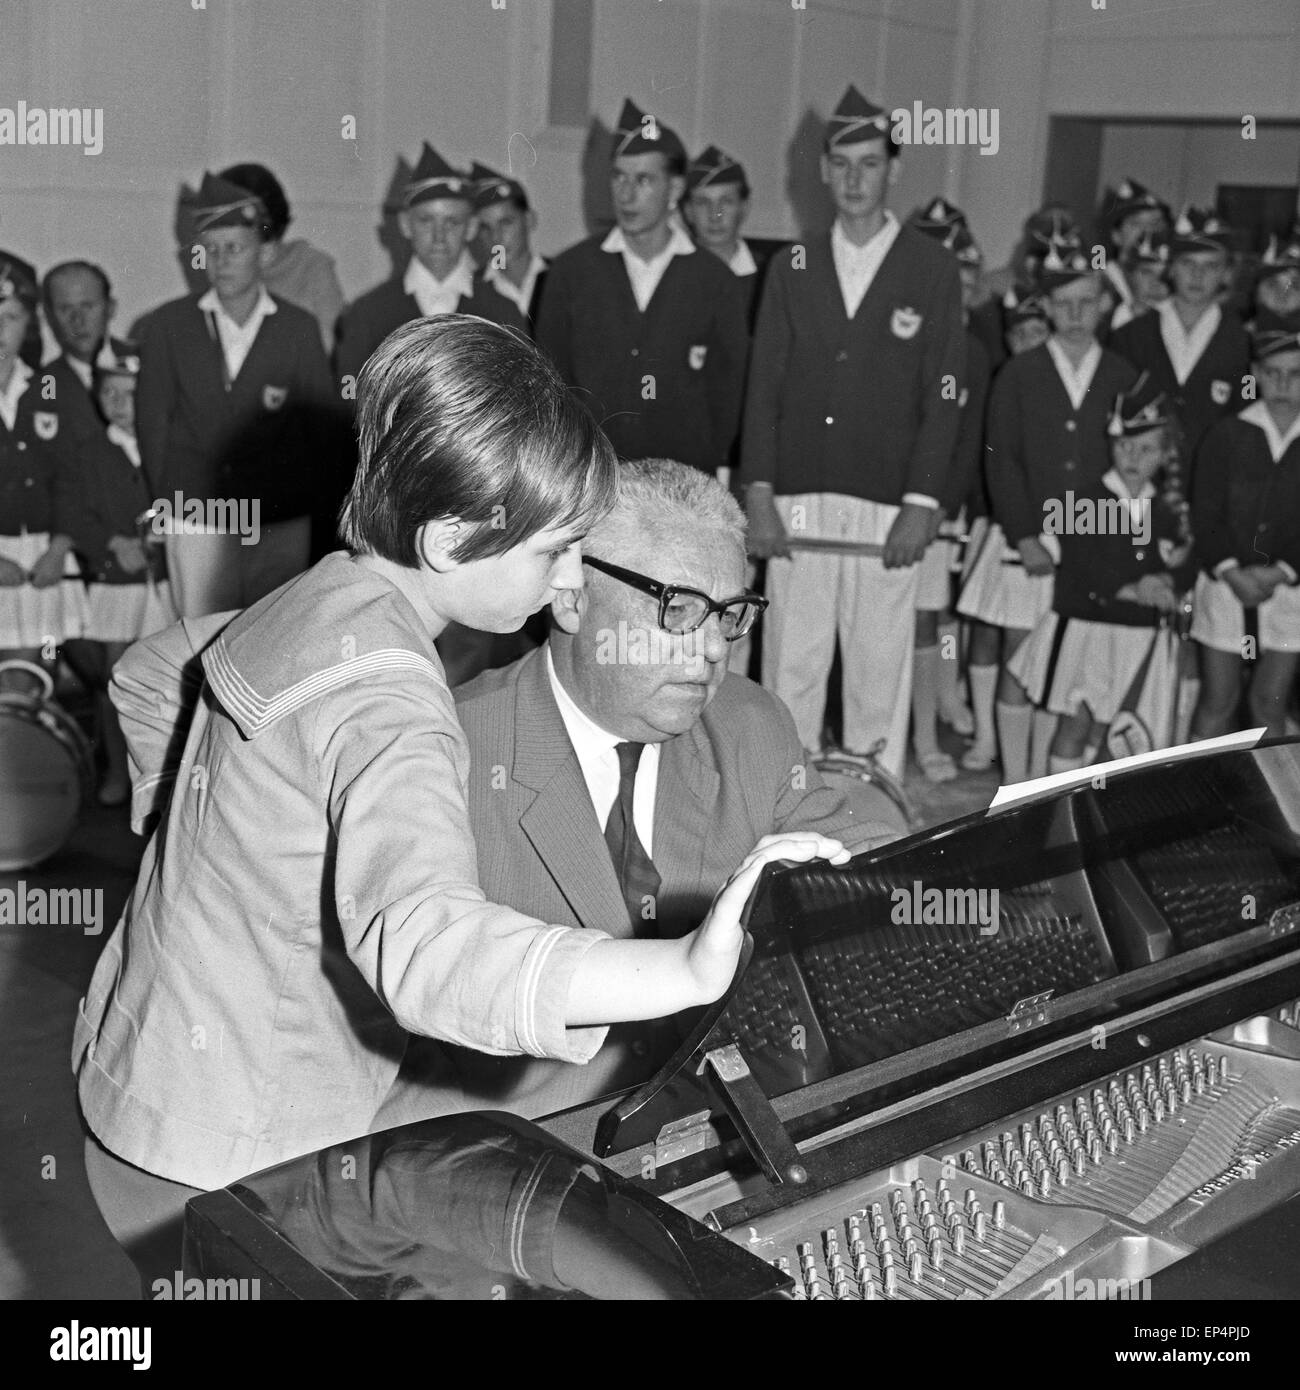 Der Spielmannszug TSV Wedel bei der Auswahlsendung der Talentsuche 'Toi Toi Toi" beim NDR di Amburgo, Deutschland 1960er Jahre Foto Stock